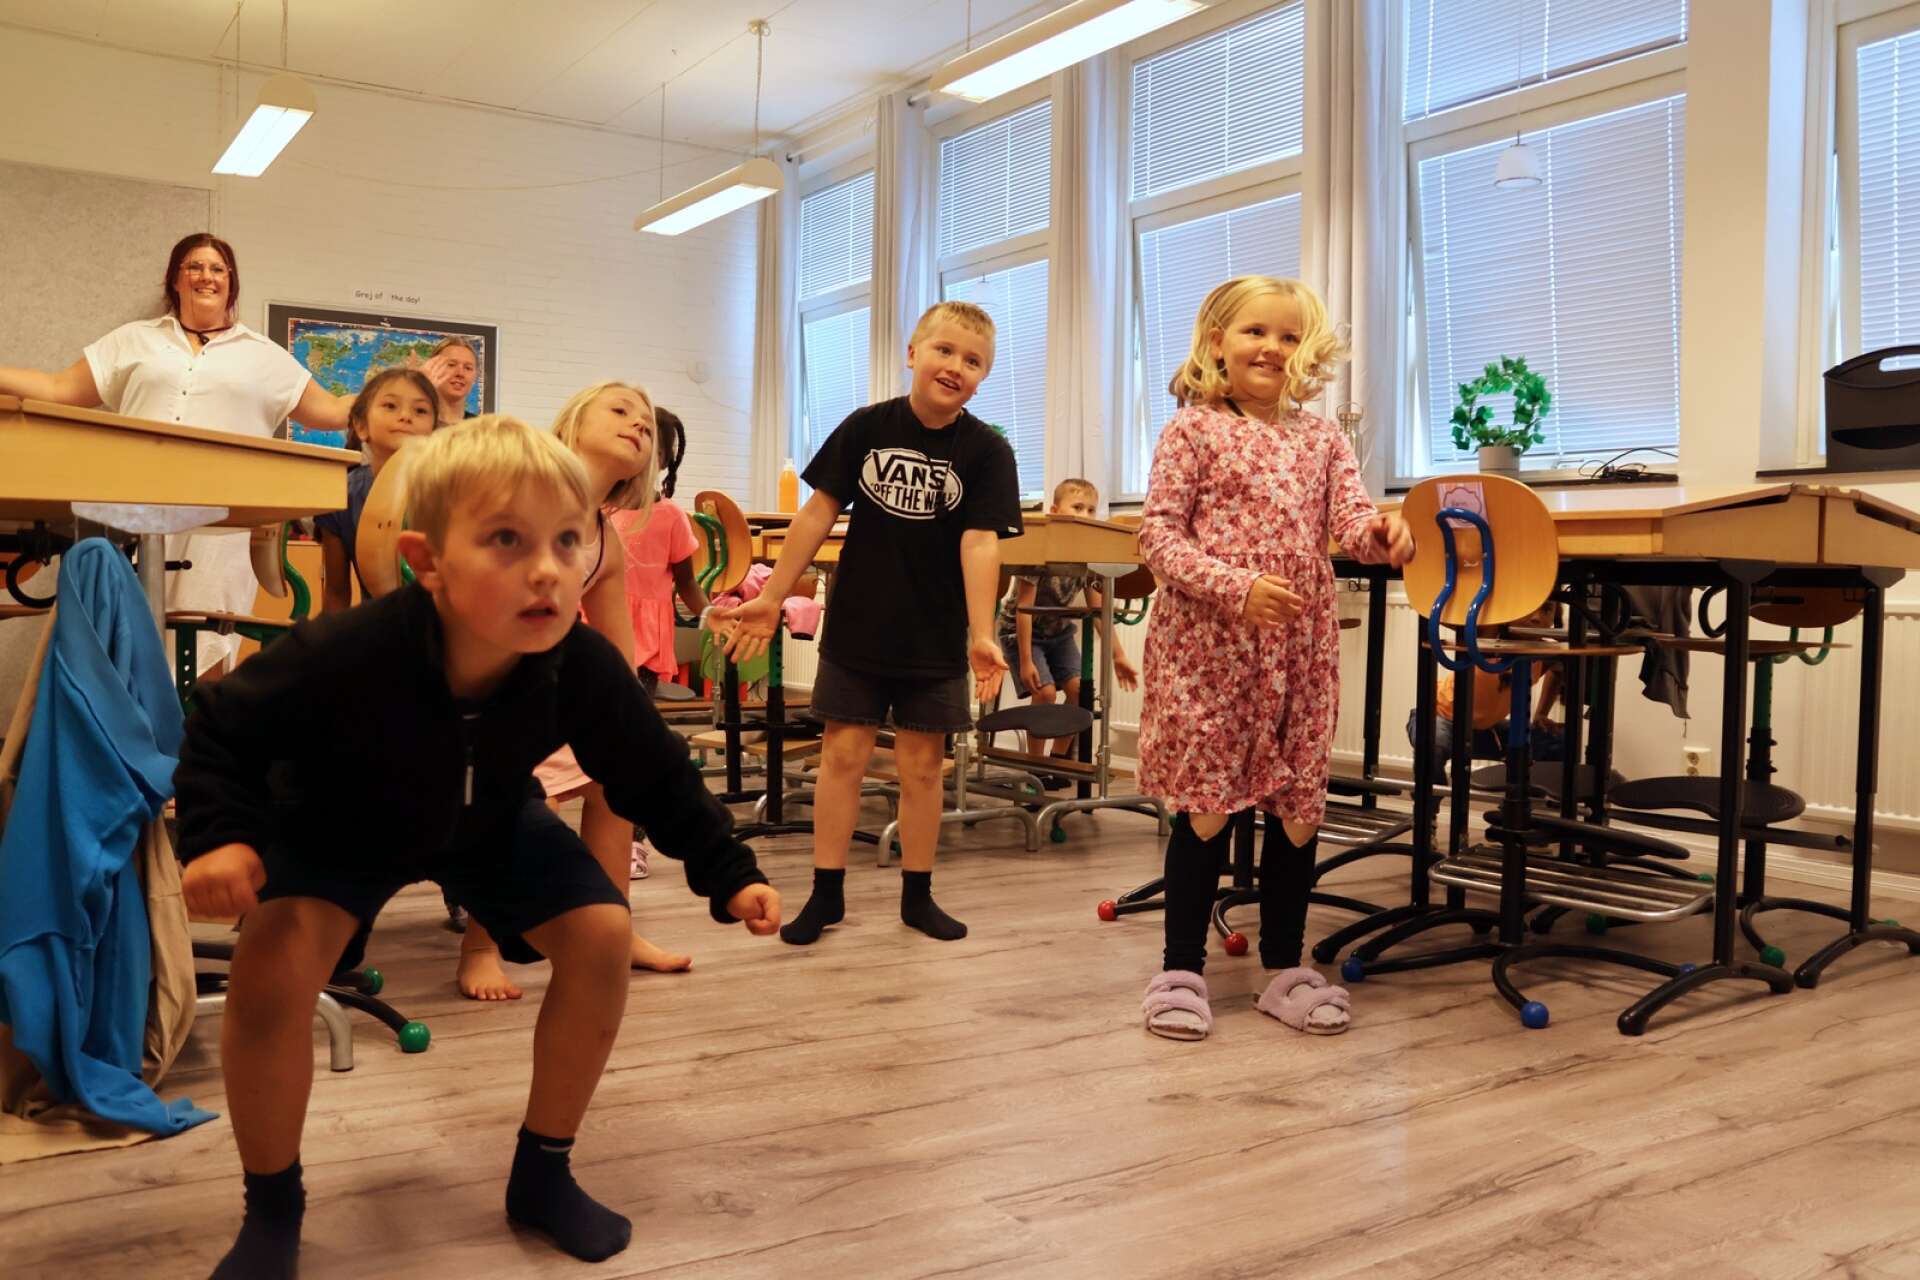 
Walde Blomberg, Emla Mattsson, Felix Ericsson och Karin Johansson i årskurs 1-2 gör sitt pulshöjande pass framför projektorn i klassrummet.


